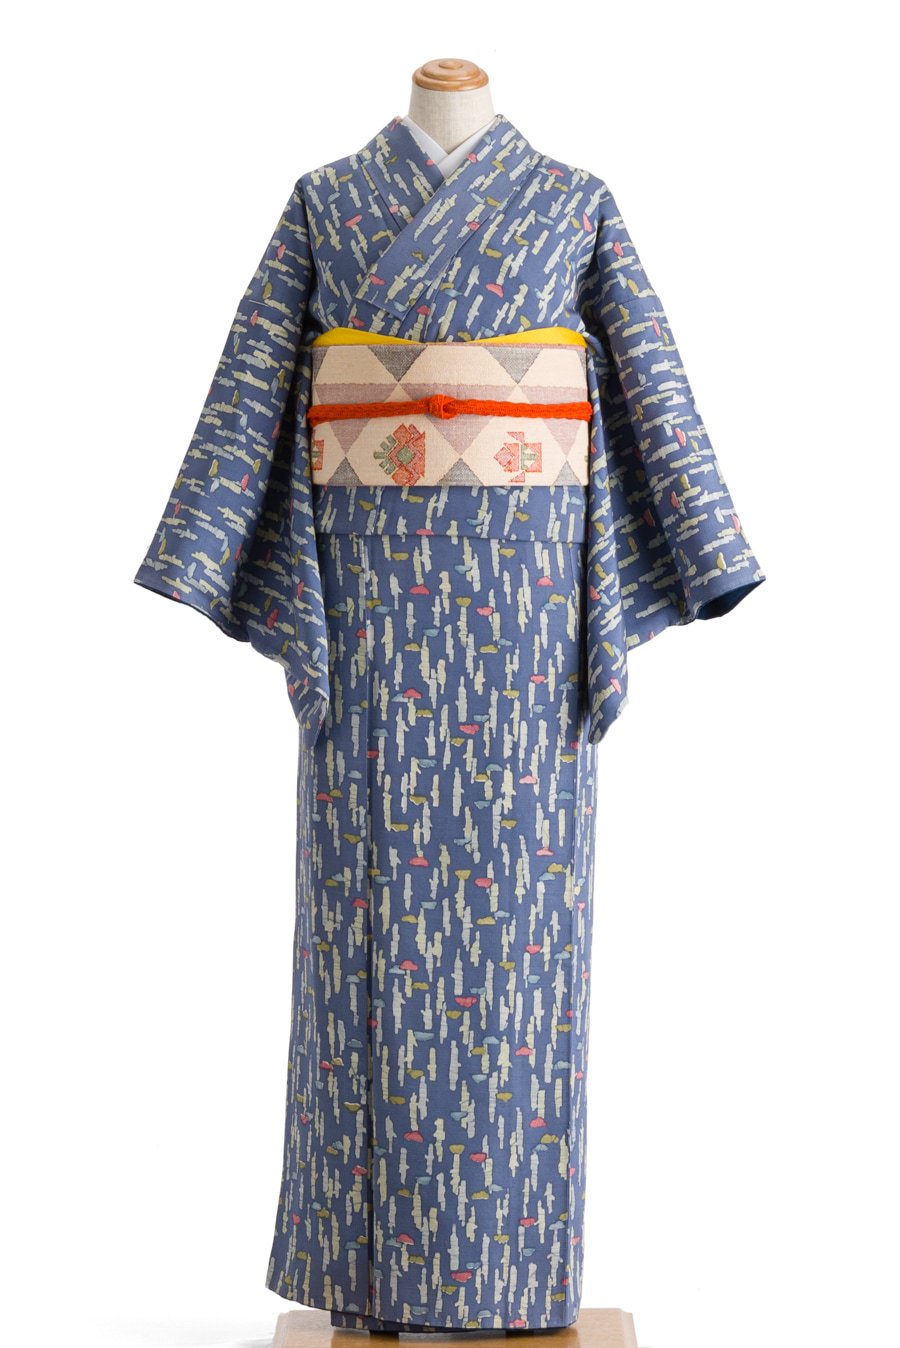 染大島紬 斜め抽象模様の付け下げ 着物 お洒落 くすみブルー 103w+